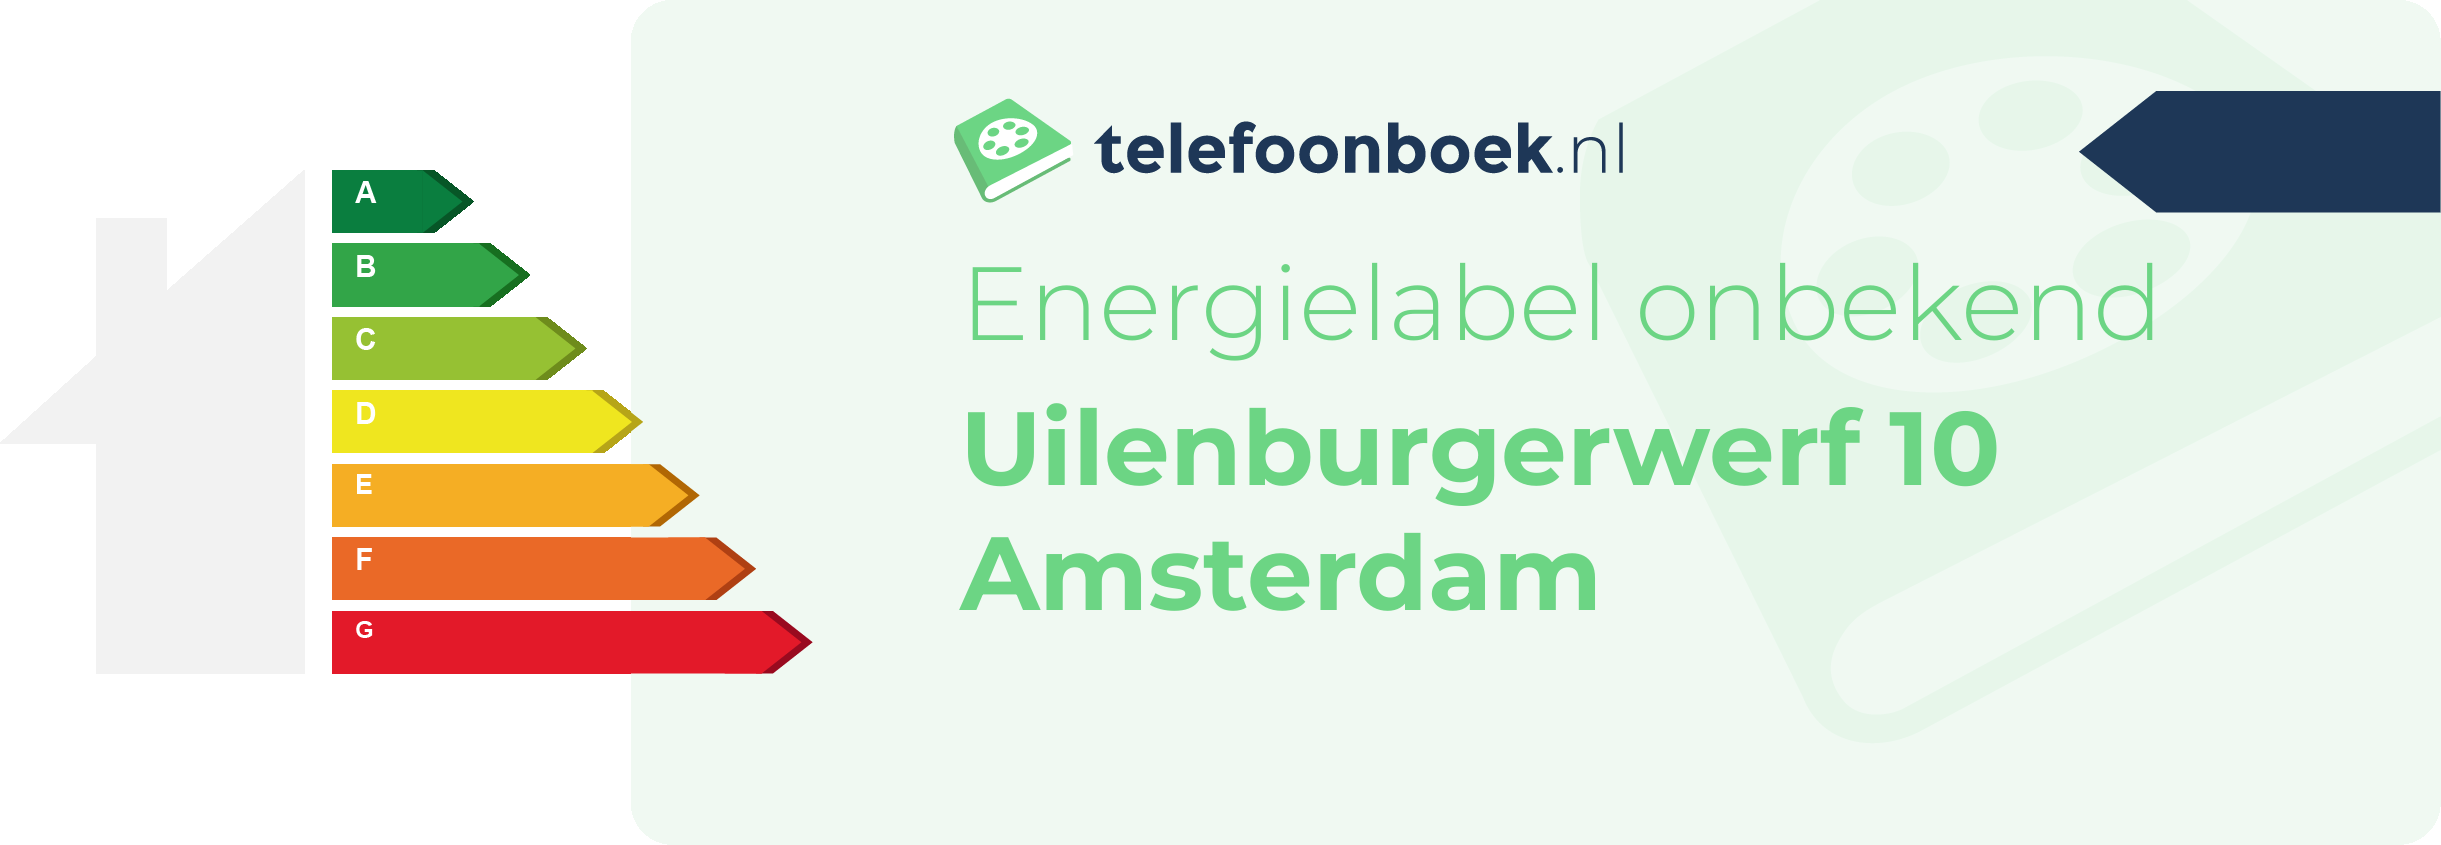 Energielabel Uilenburgerwerf 10 Amsterdam